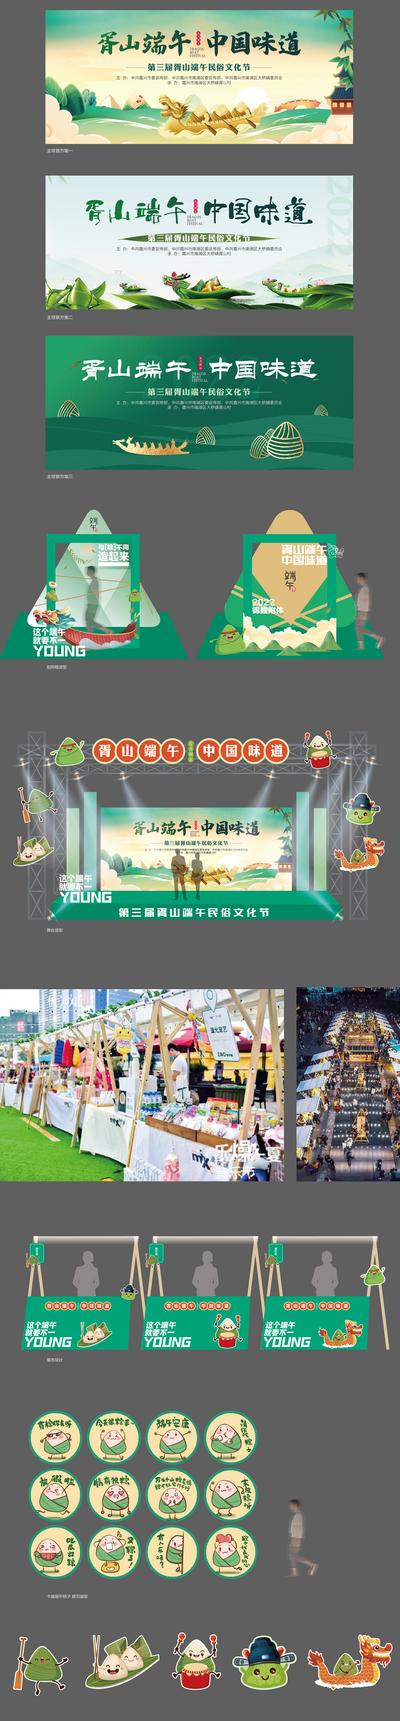 南门网 背景板 活动展板 中国传统节日 端午节 粽子 舞美 摊位 插画